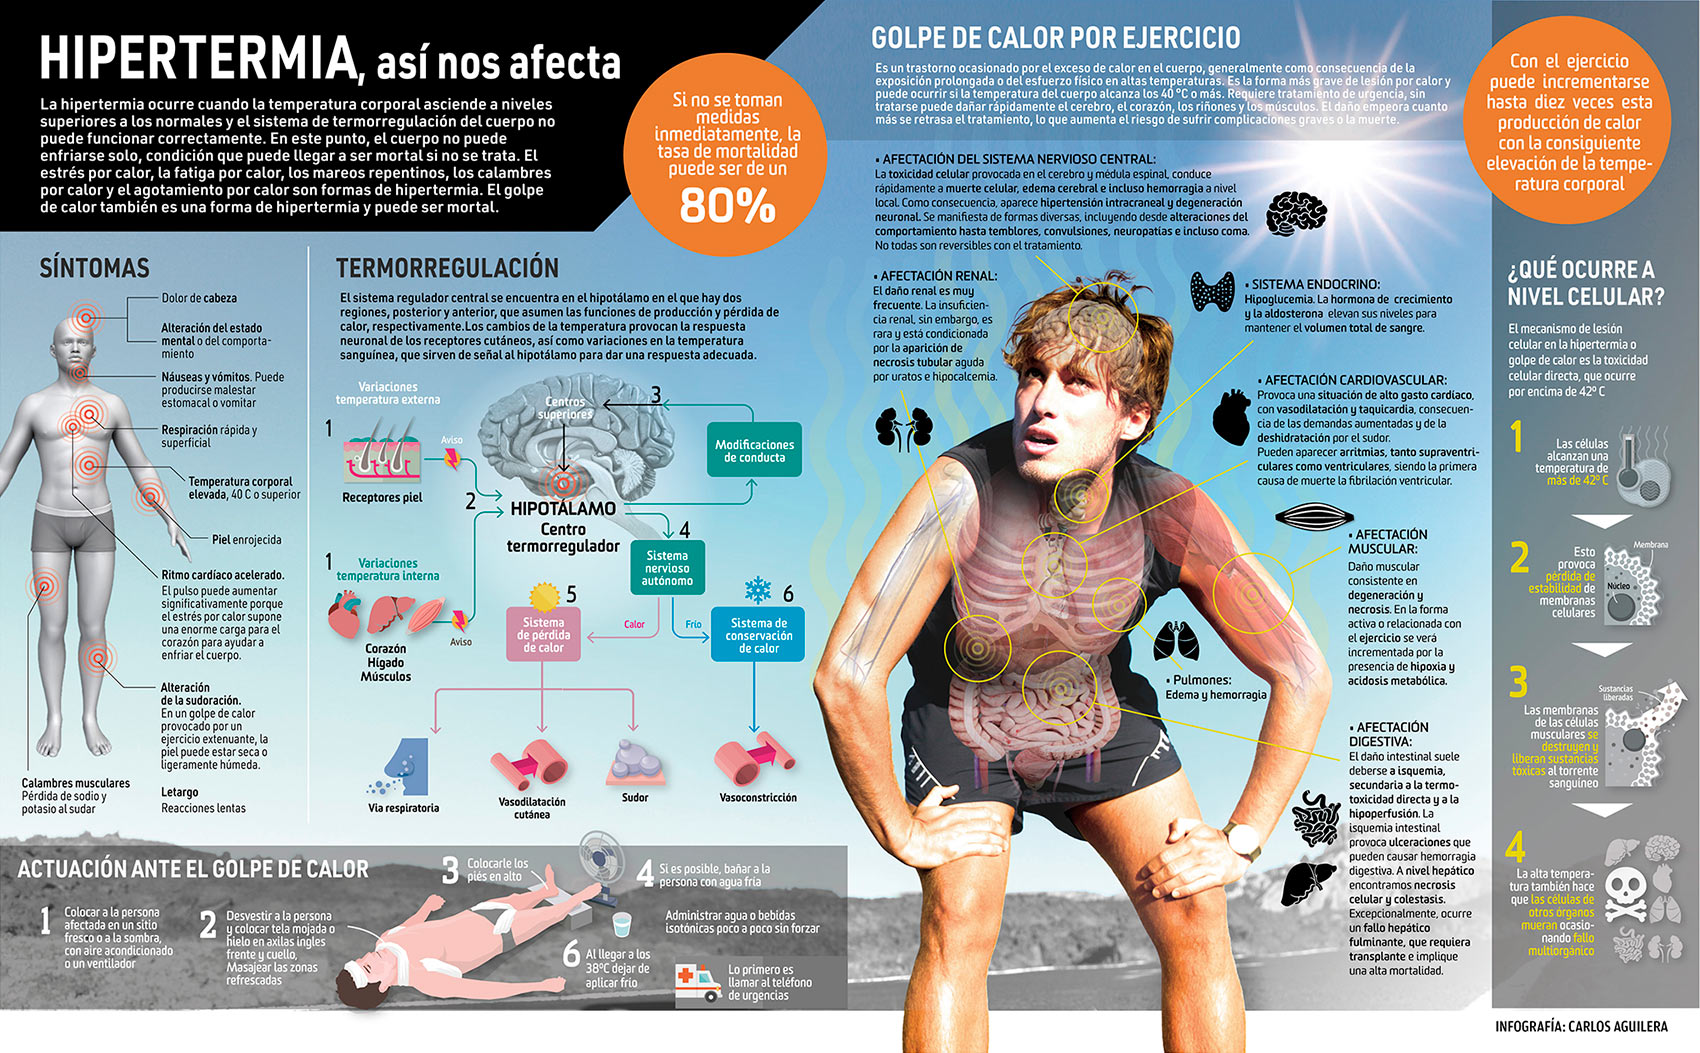 Infografía sobre el golpe de calor cuando se realiza ejercicio físico. Carlos Aguilera.